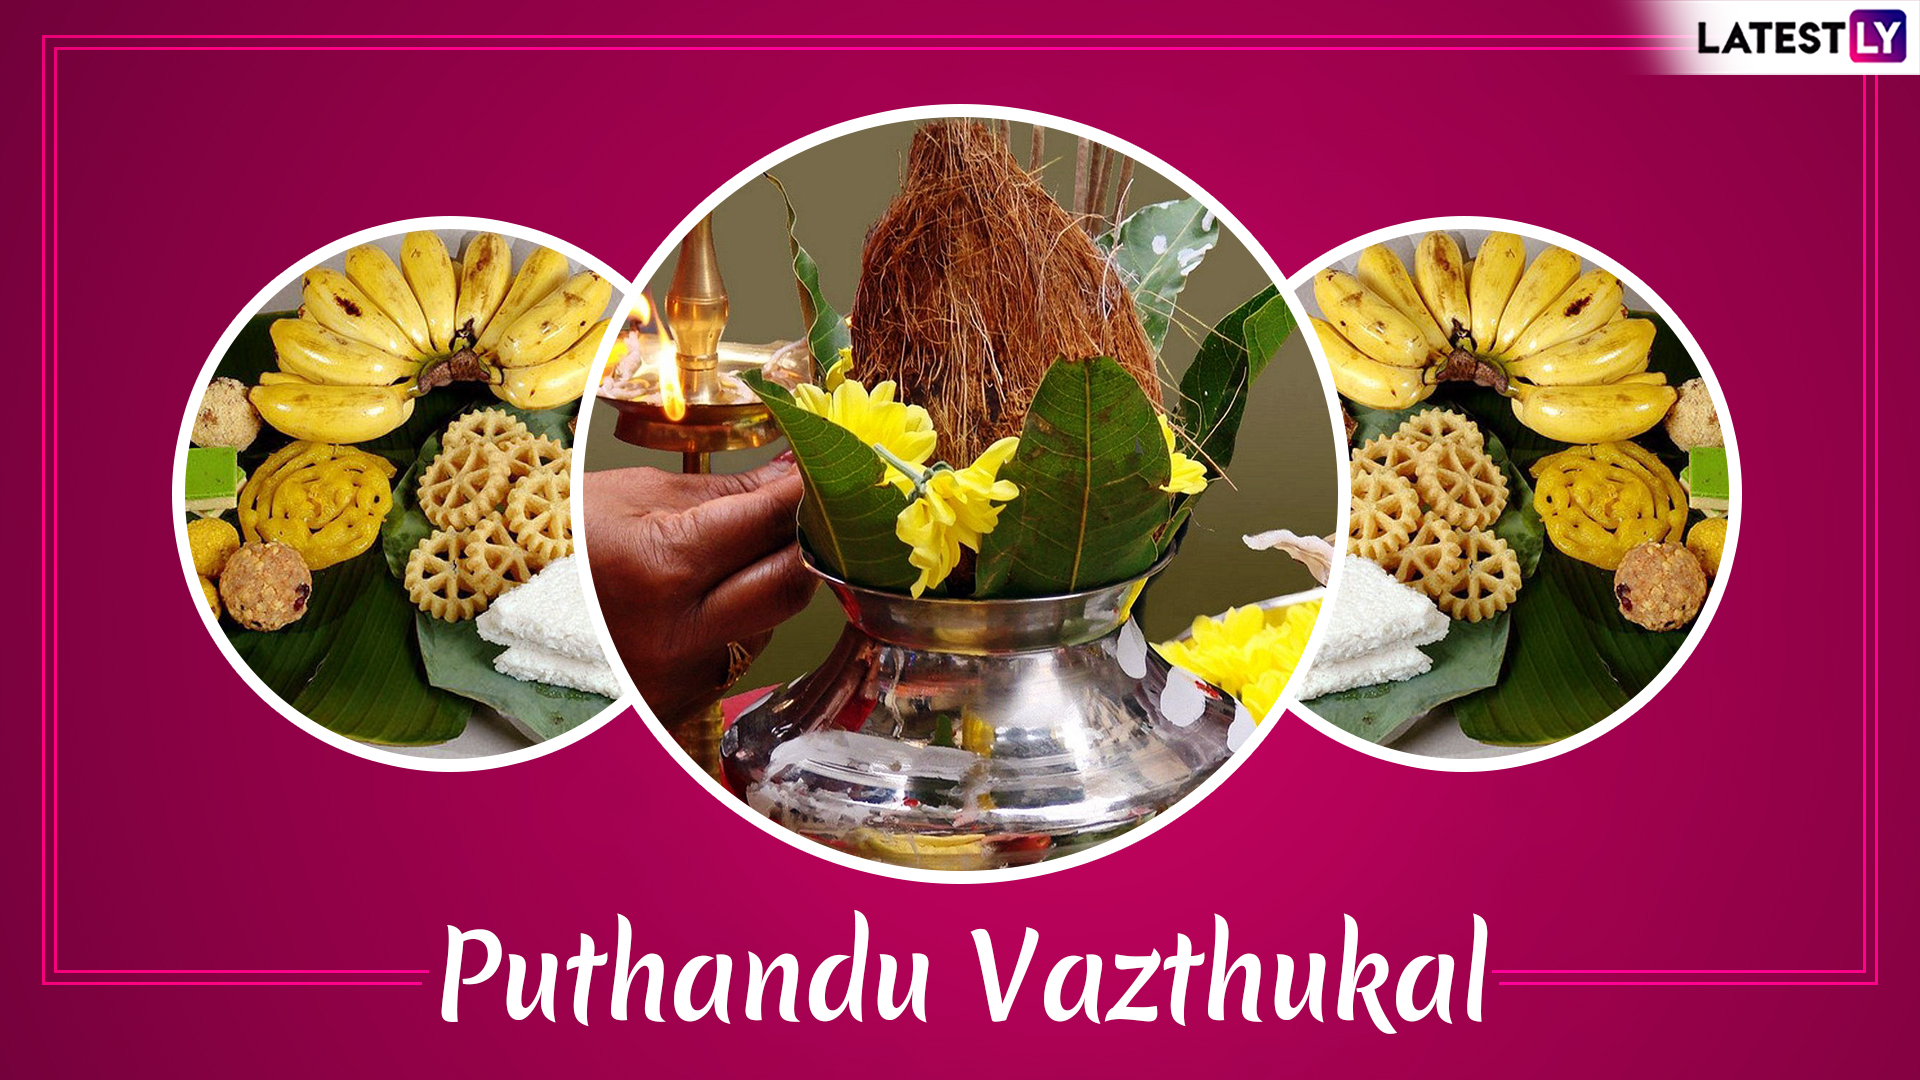 Puthandu Vazthukal 2019 Greetings in Tamil Best WhatsApp 